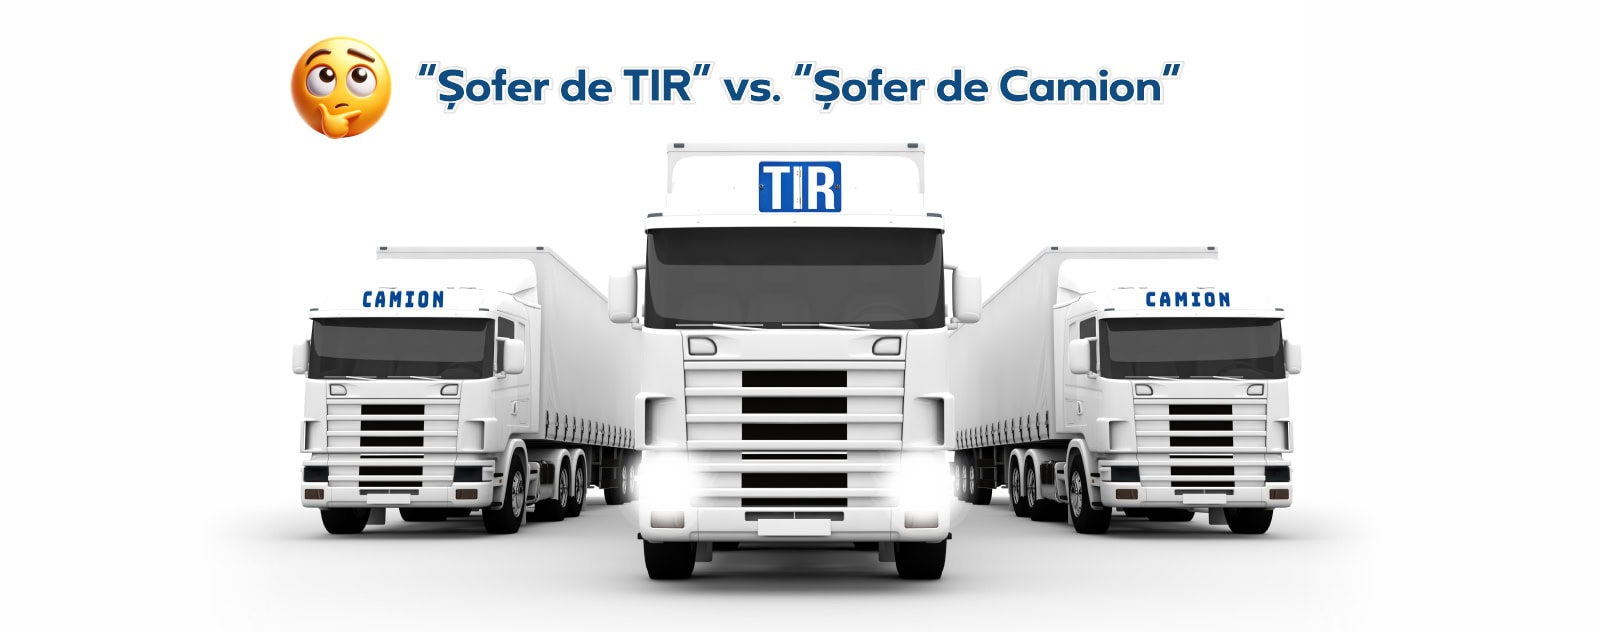 Sofer de TIR vs Sofer de Camion